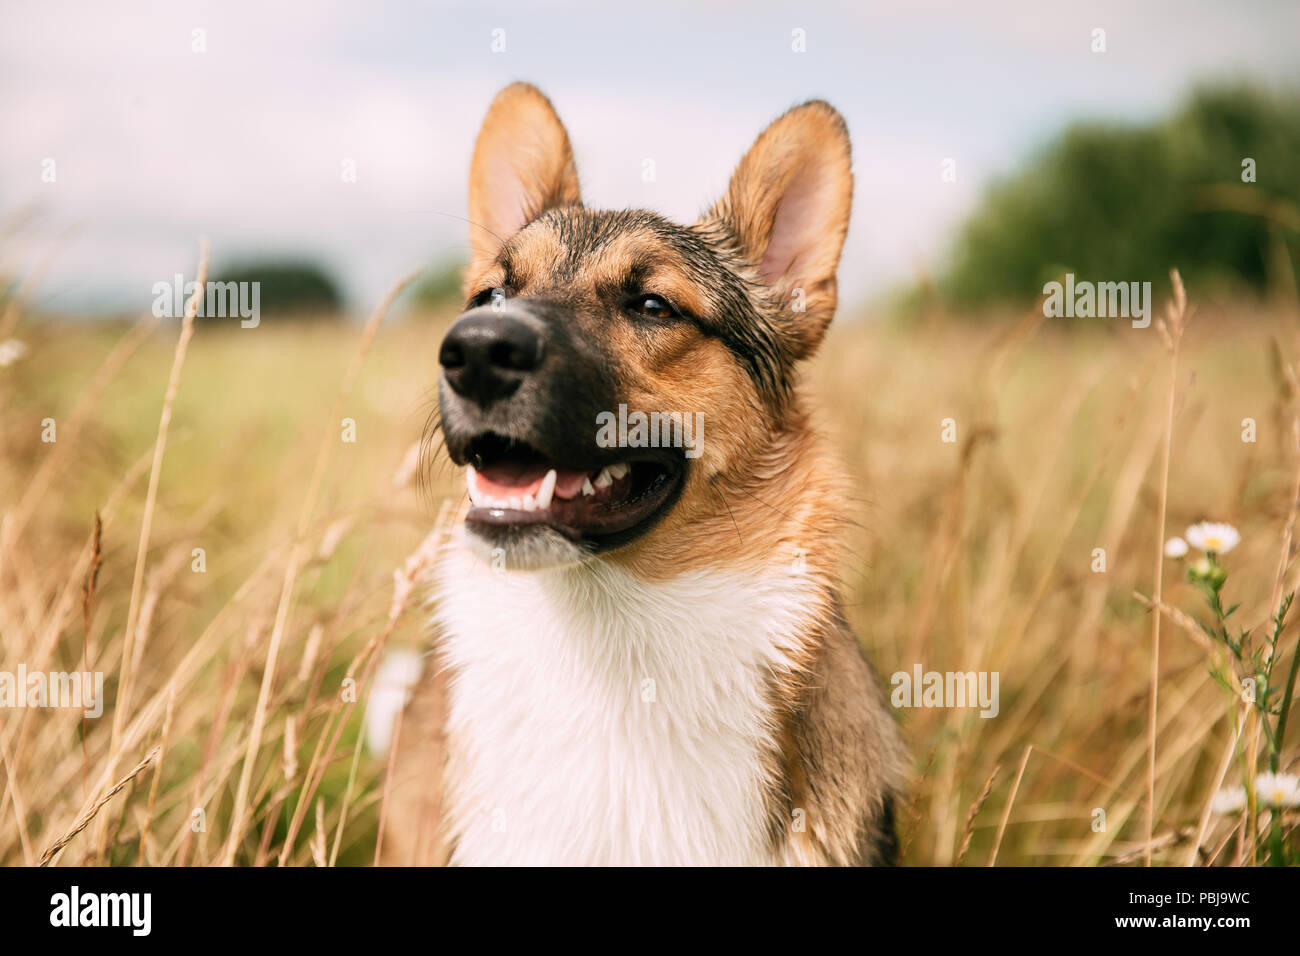 Close Up Portrait of Young Funny Dog. Chien assis en été l'herbe sèche. Banque D'Images